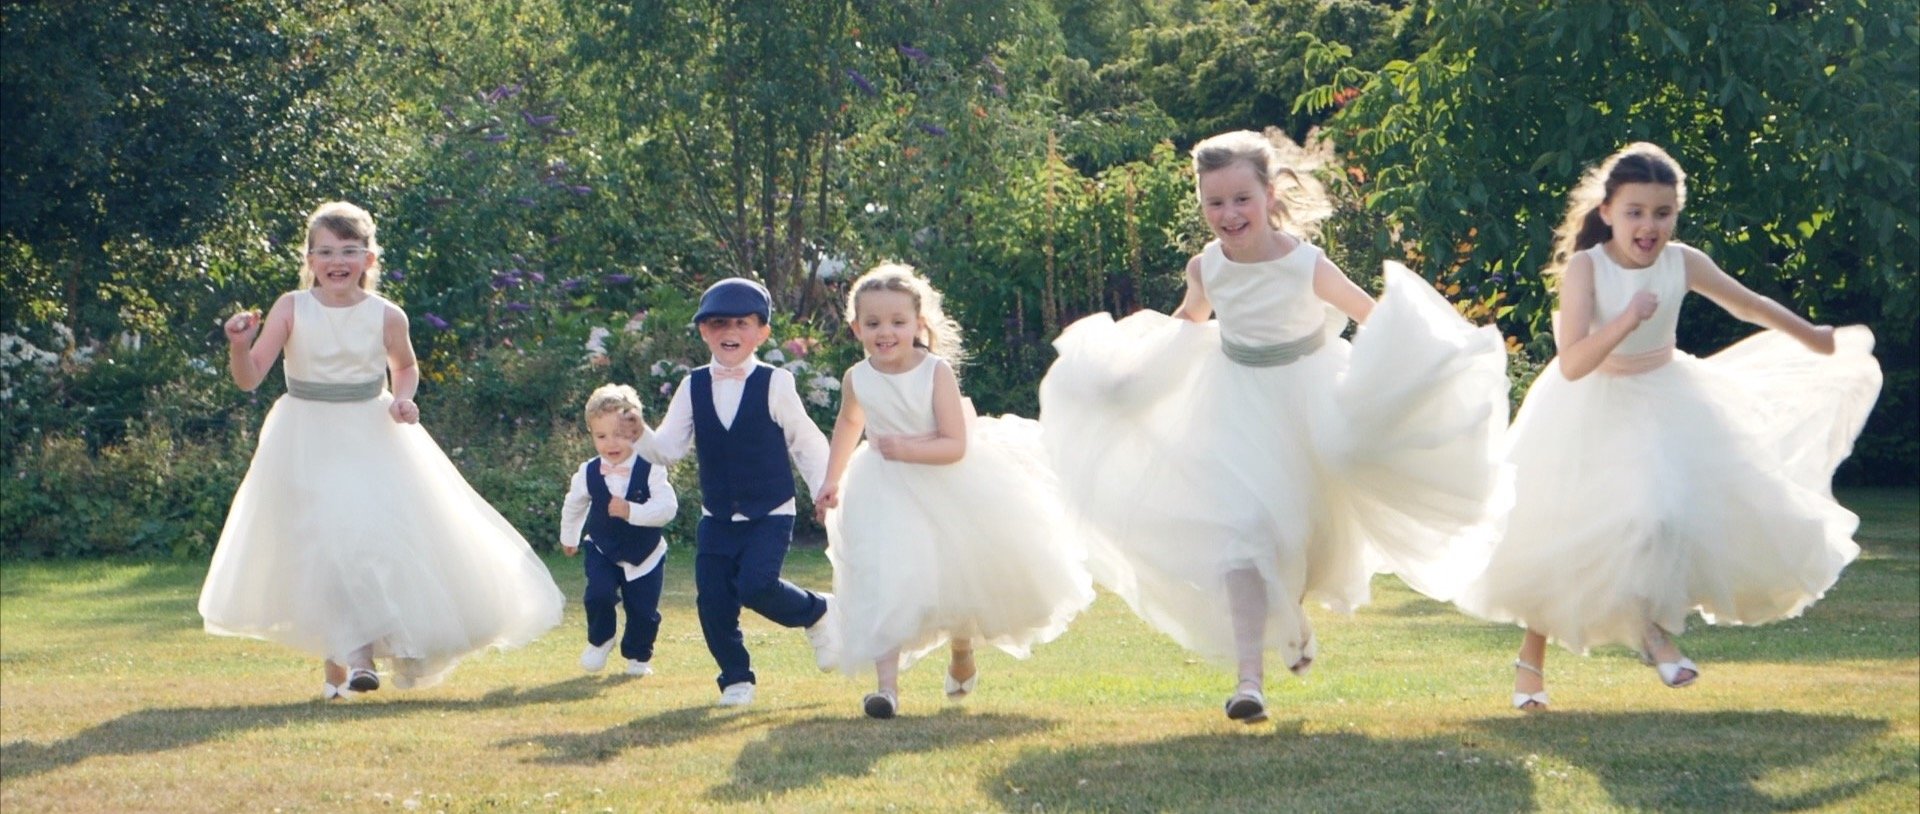 Essex wedding videos 3 Cheers Media - Run Kids!.jpg